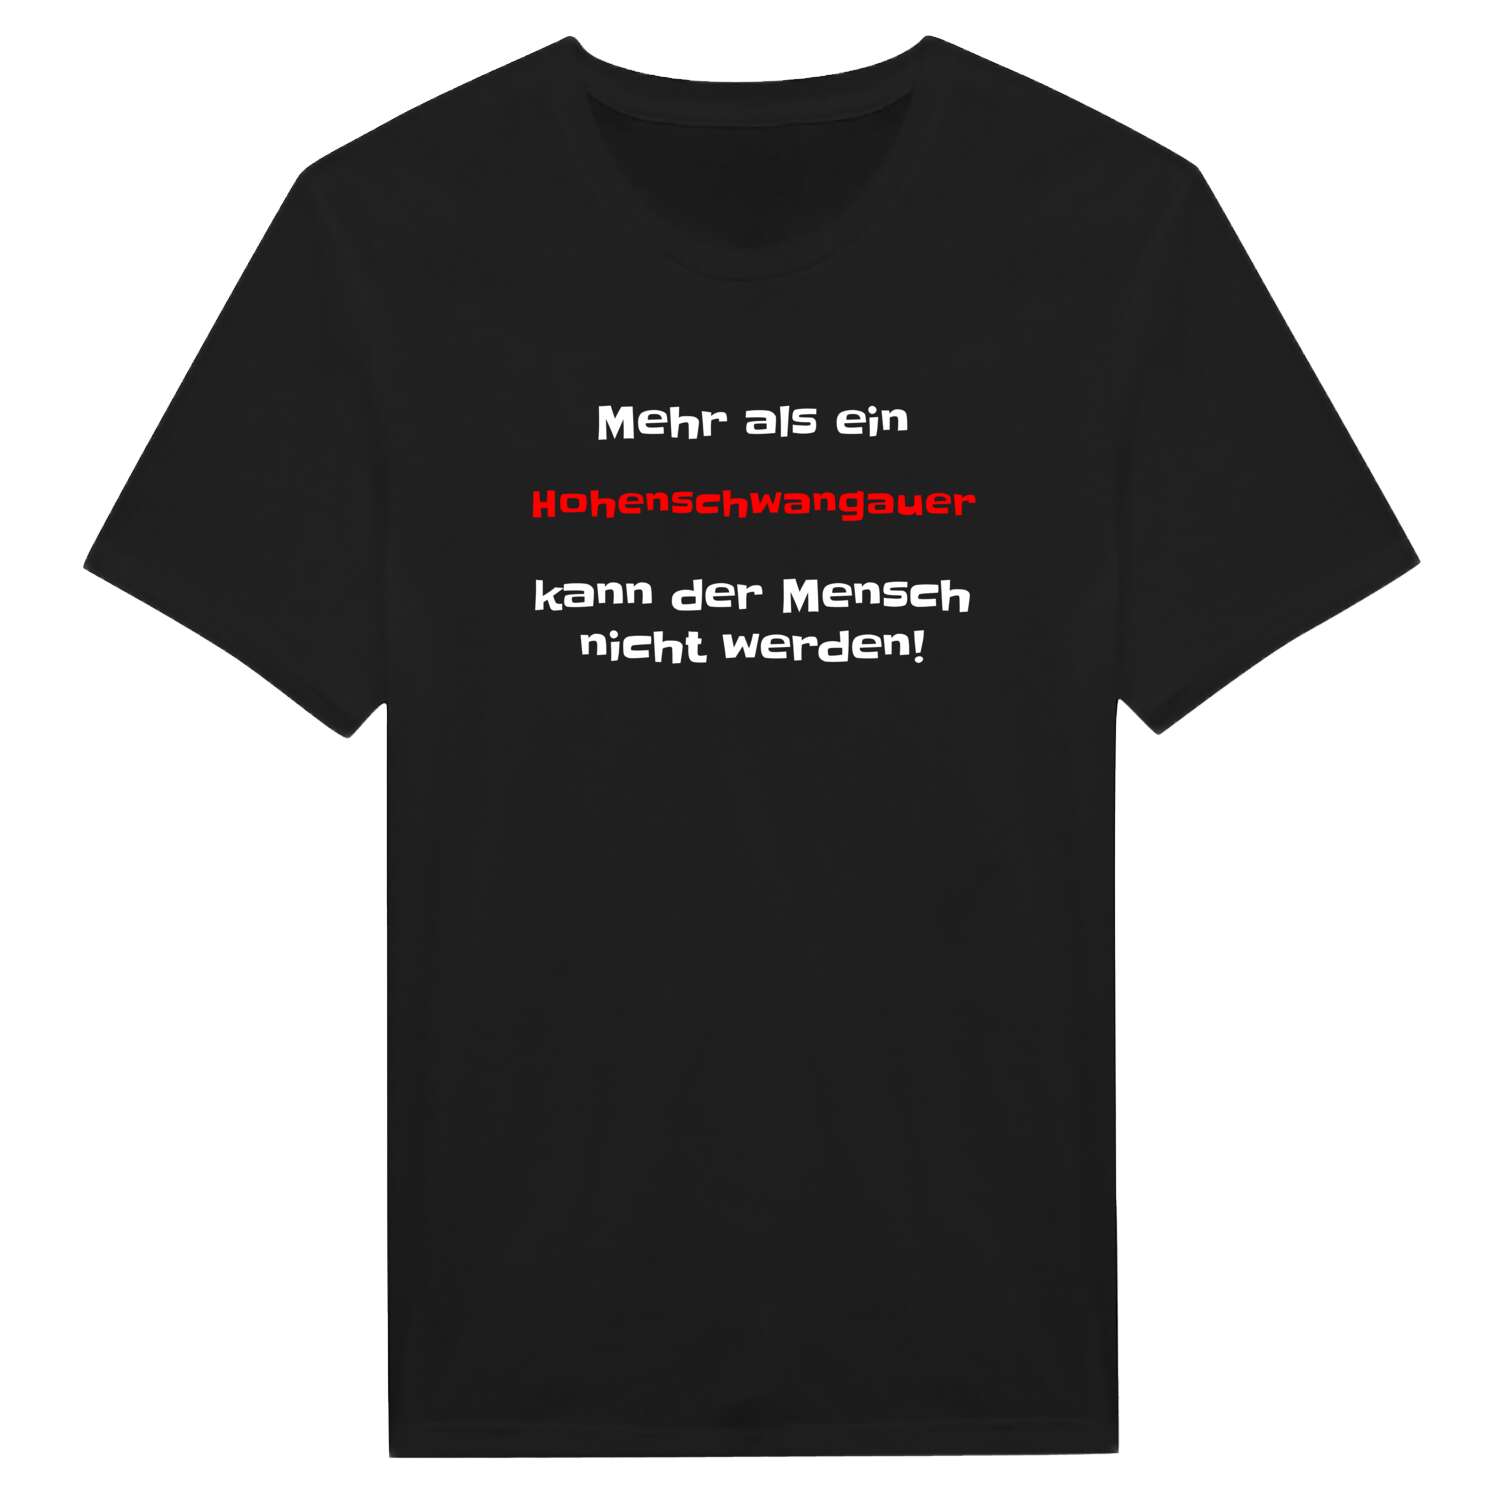 Hohenschwangau T-Shirt »Mehr als ein«